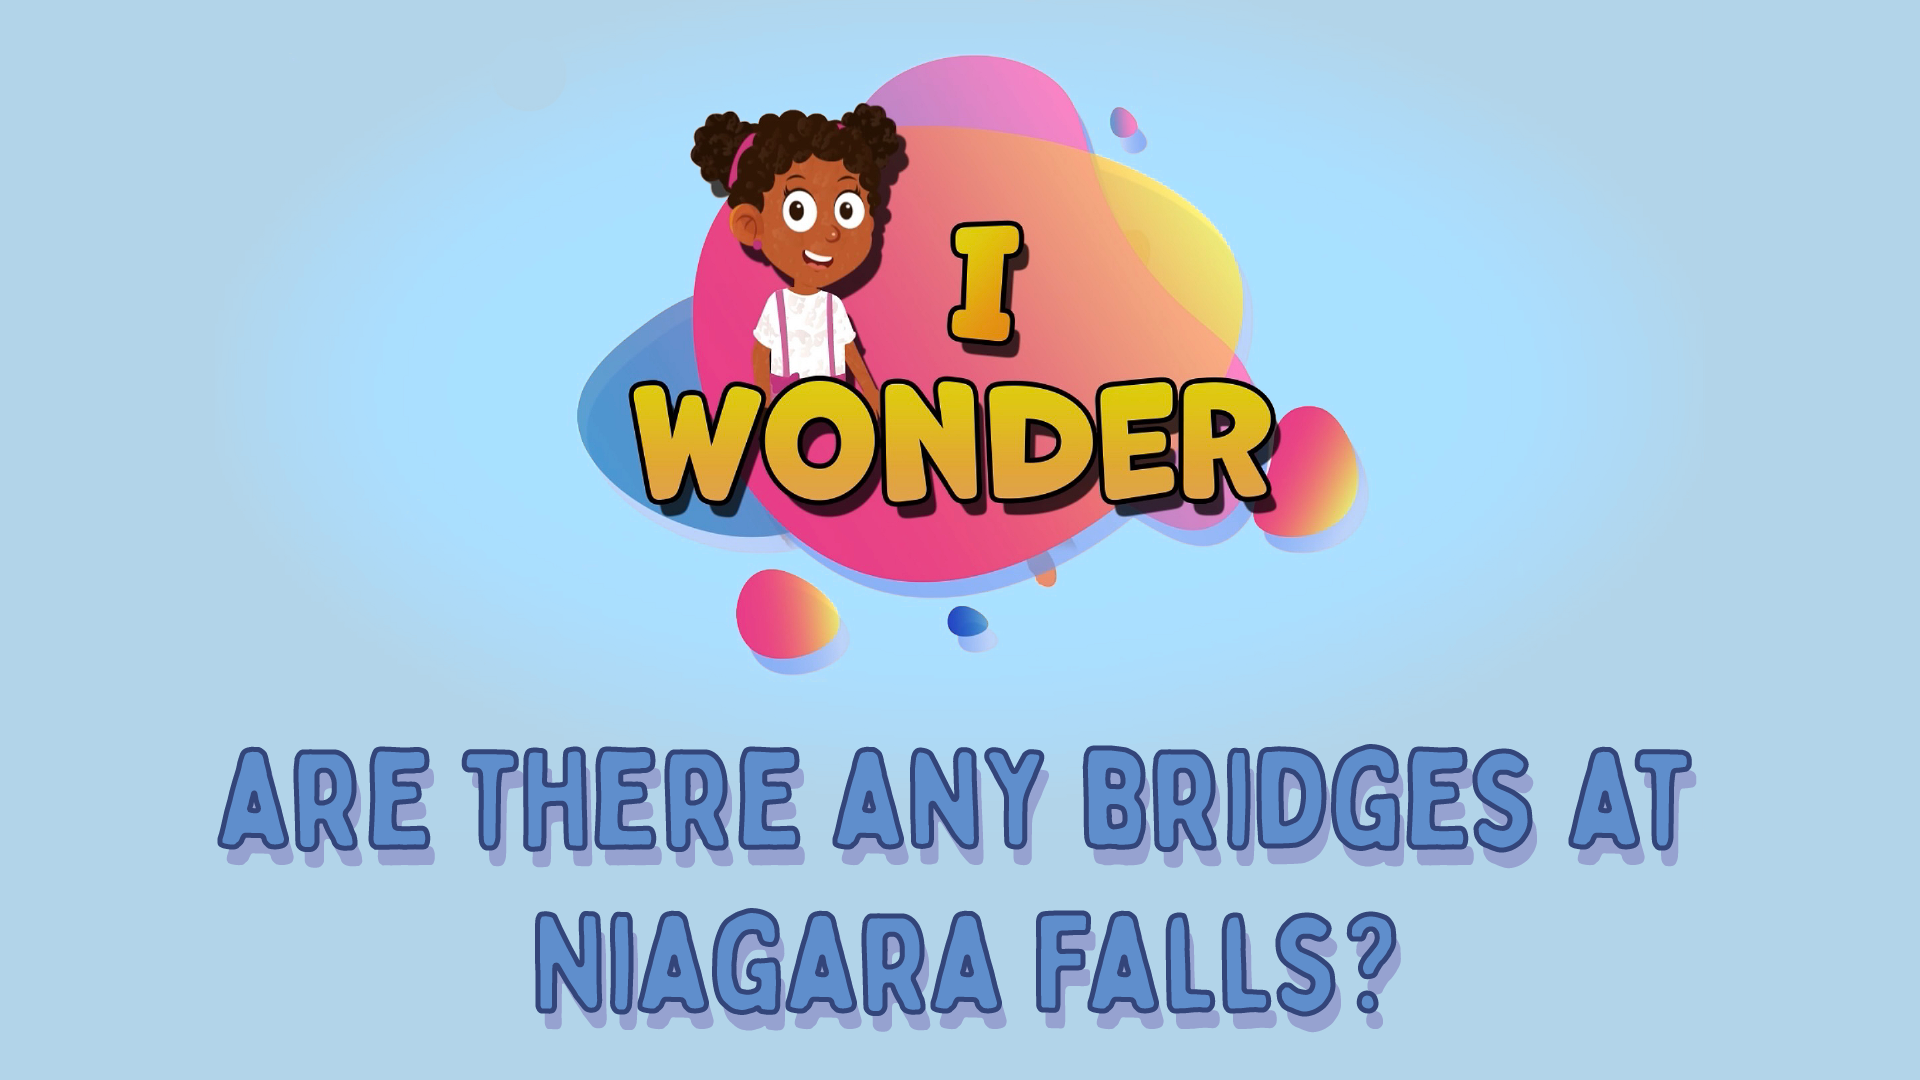 Are There Any Bridges At Niagara Falls?